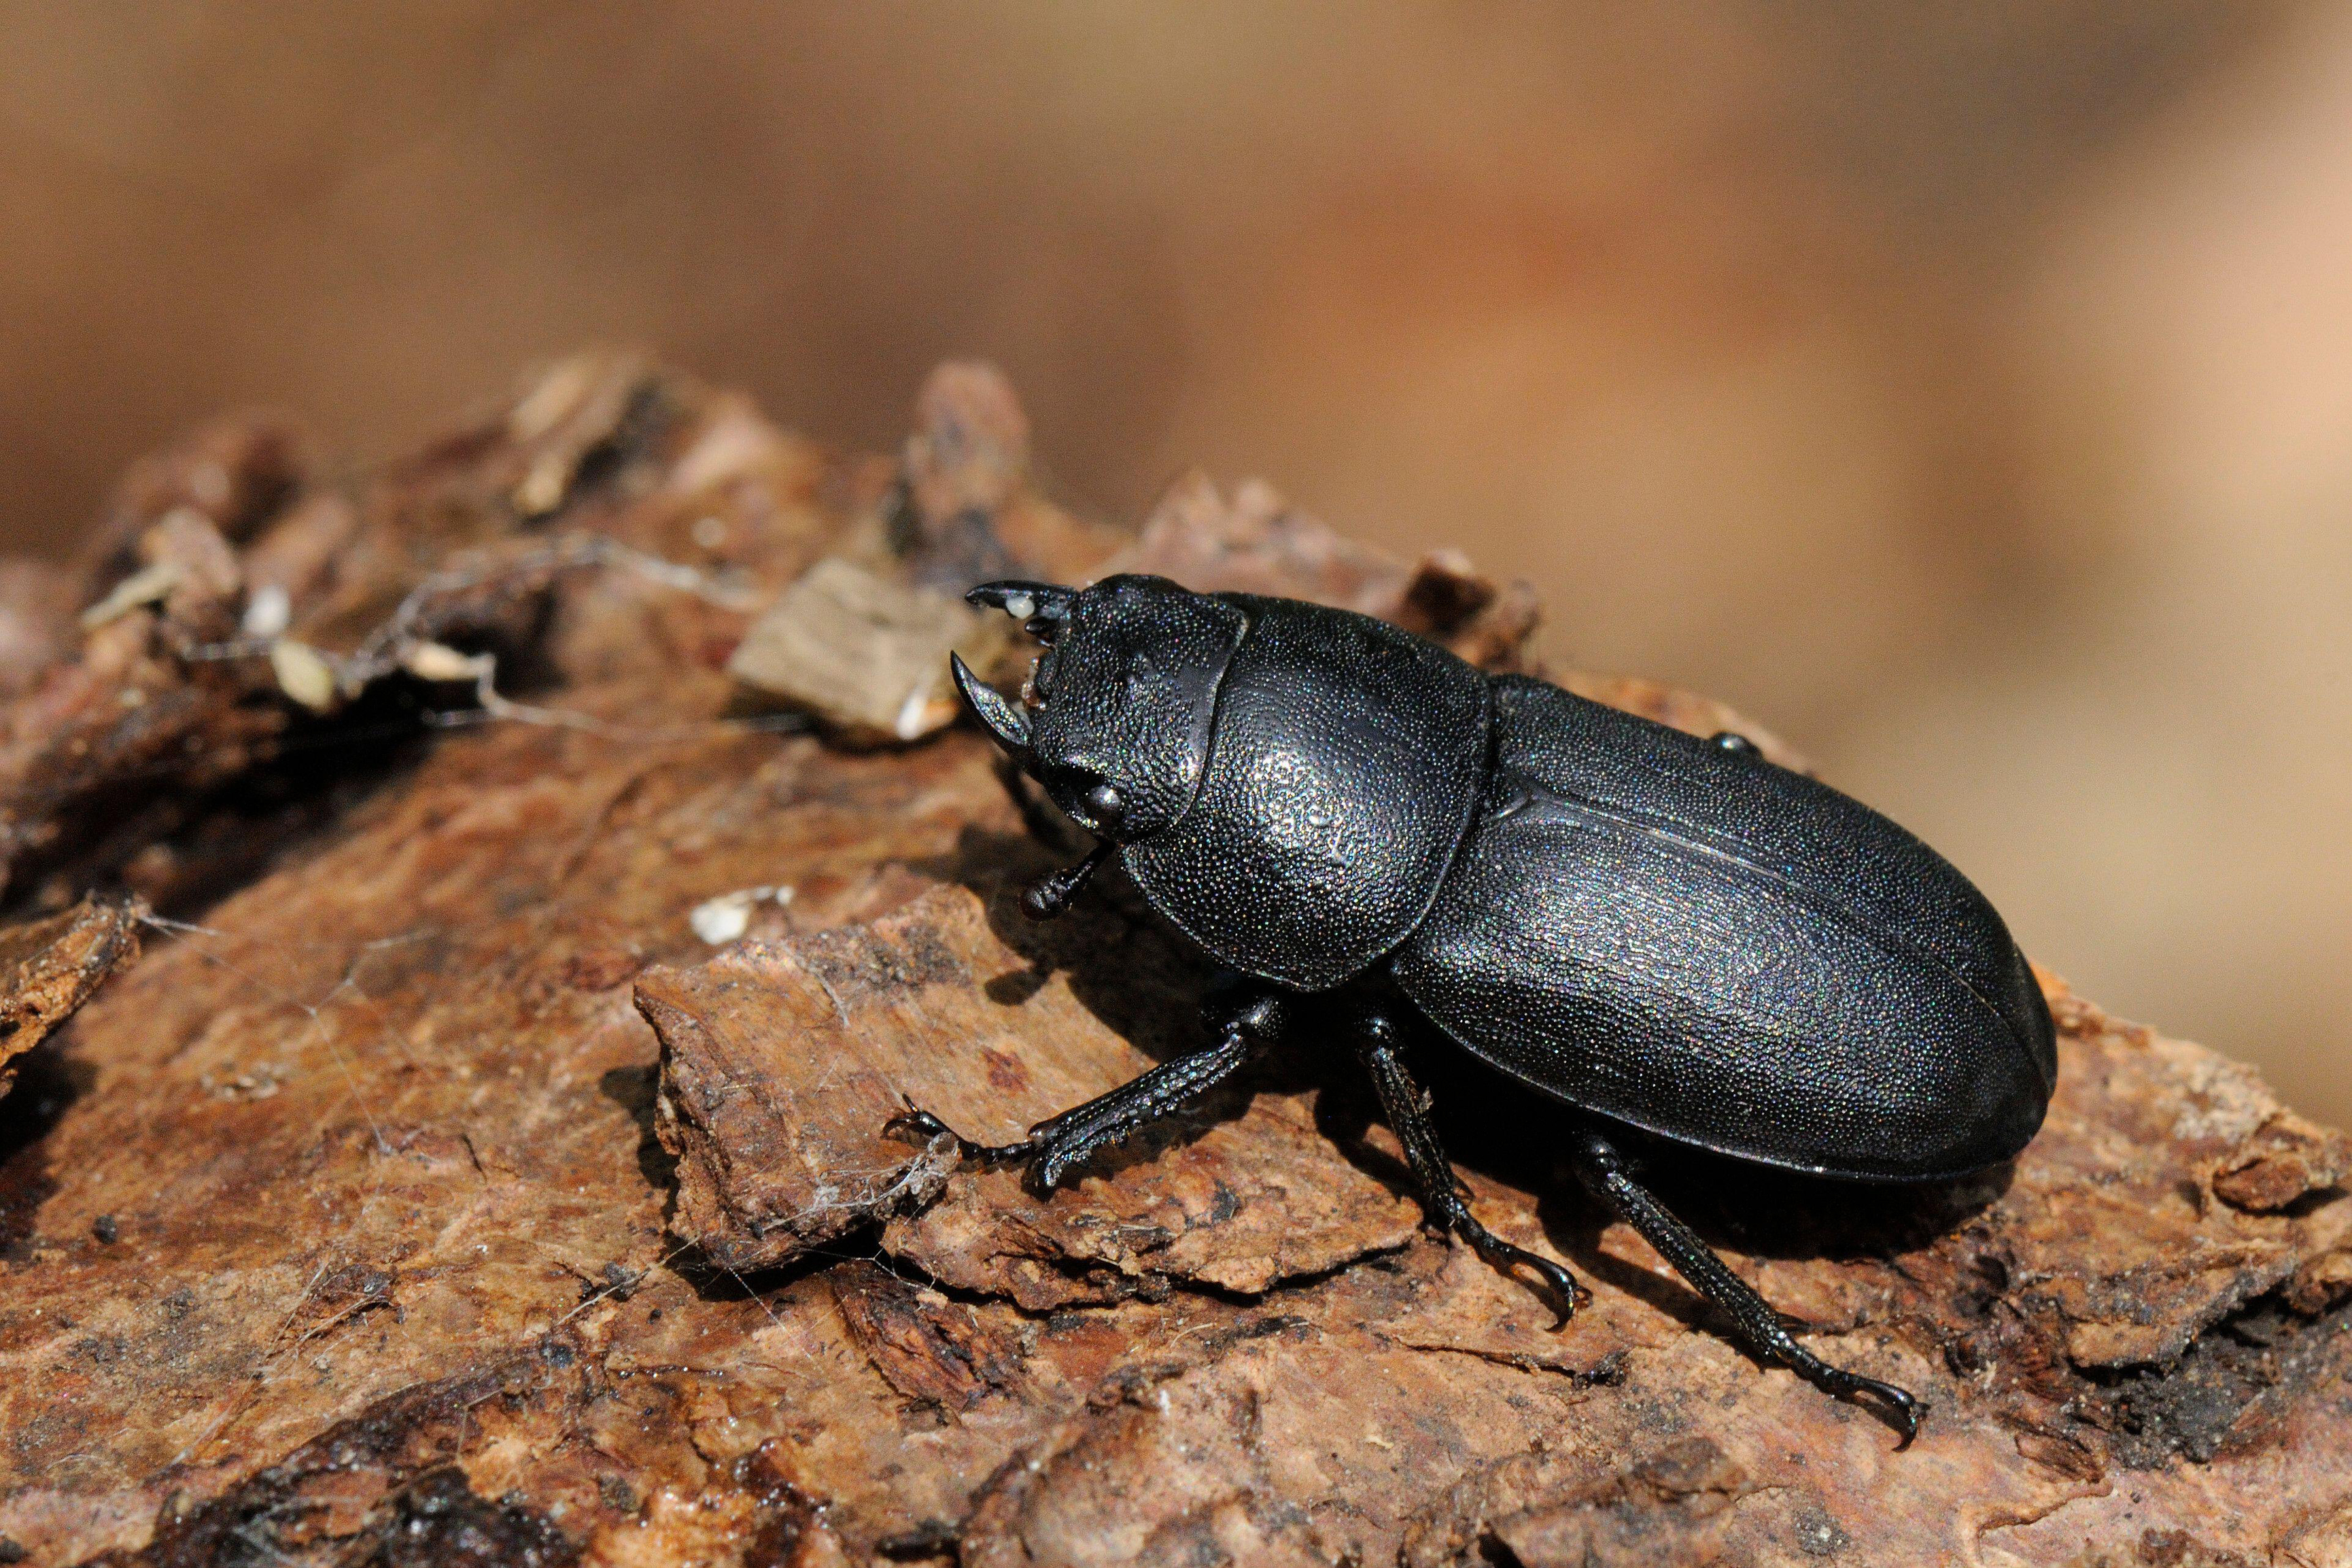 Stag beetle on a log (Alamy/PA)